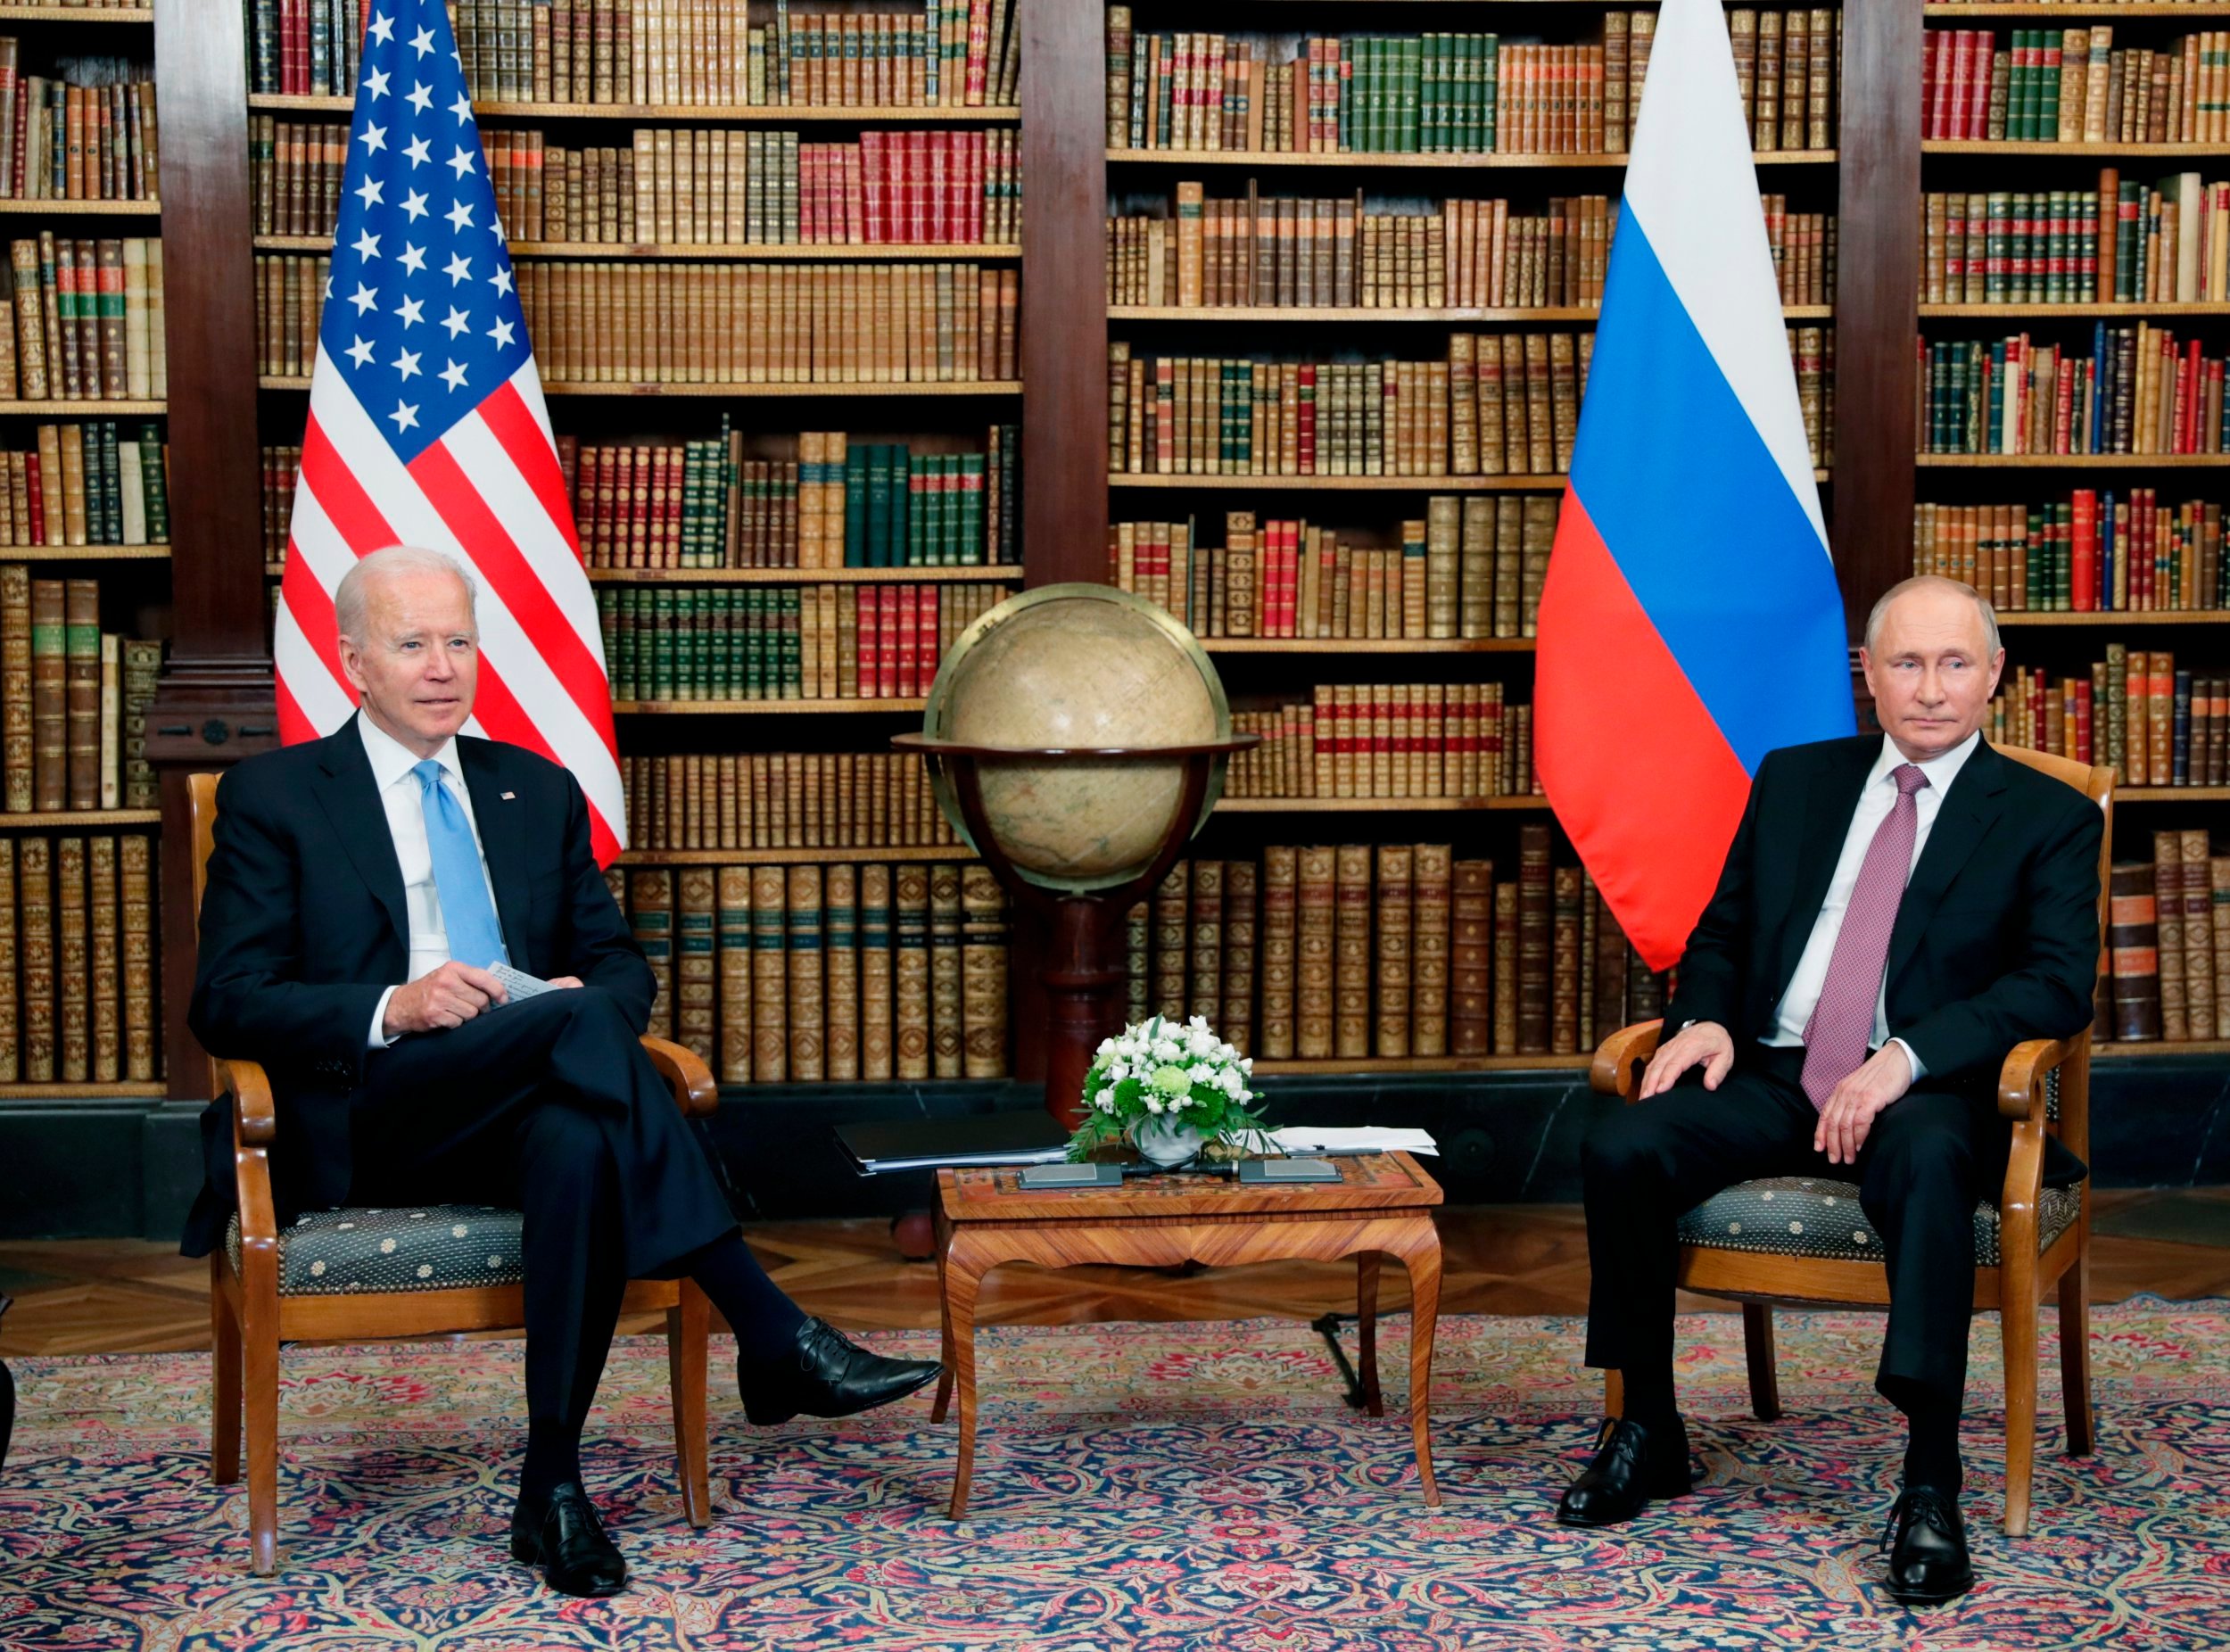 Se podía ver a Biden sosteniendo el mapa y cruzando las piernas, junto a Putin, quien estaba sentado en una postura amplia.